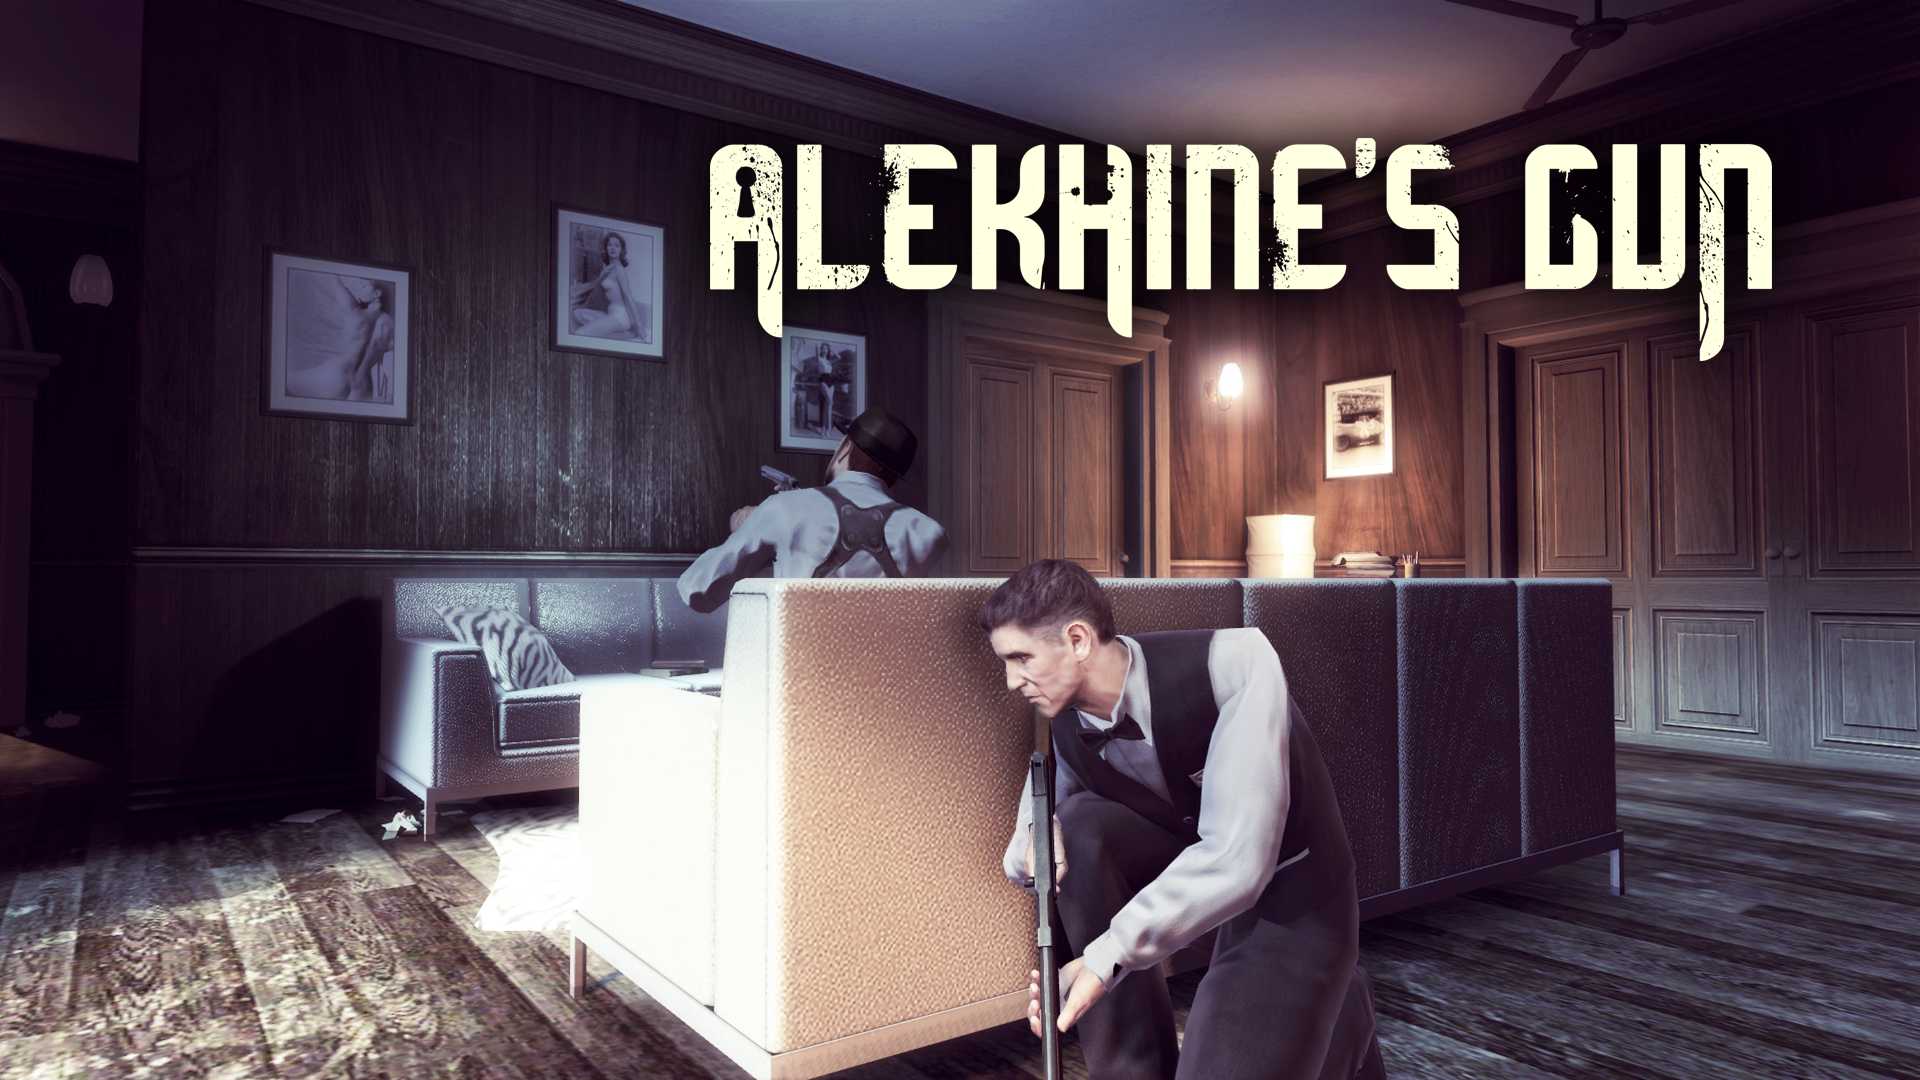 Alekhine s gun. Alekhine's Gun трейнер.